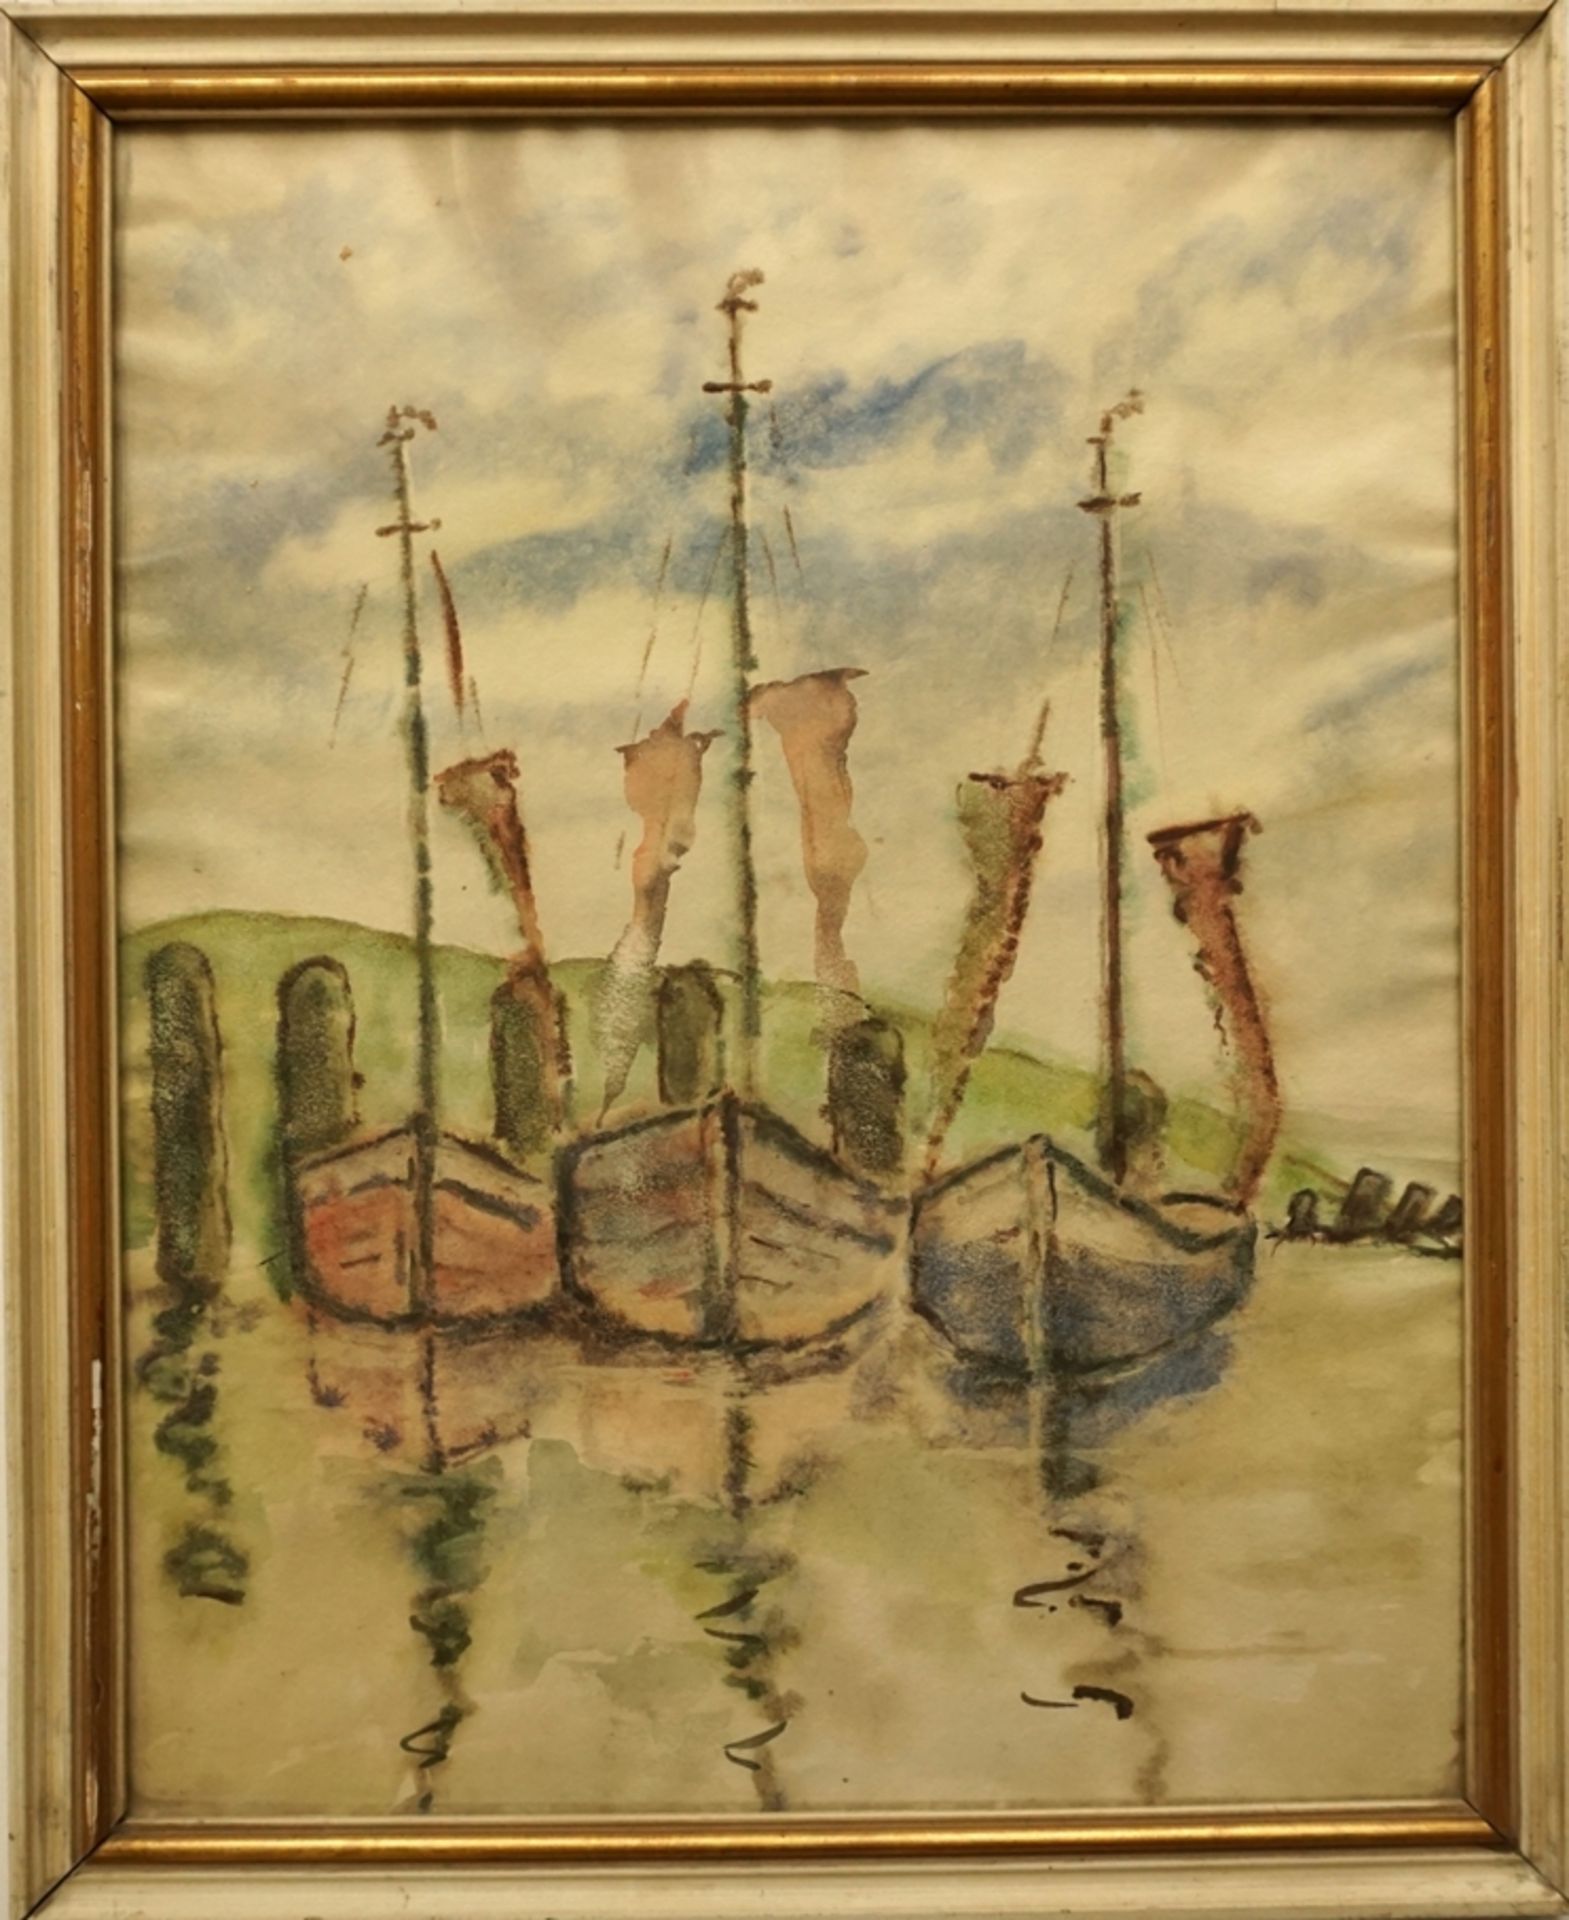 anonymer Künstler, "Anliegende Segelboote", frühes 20. Jh., Aquarell - Bild 2 aus 2